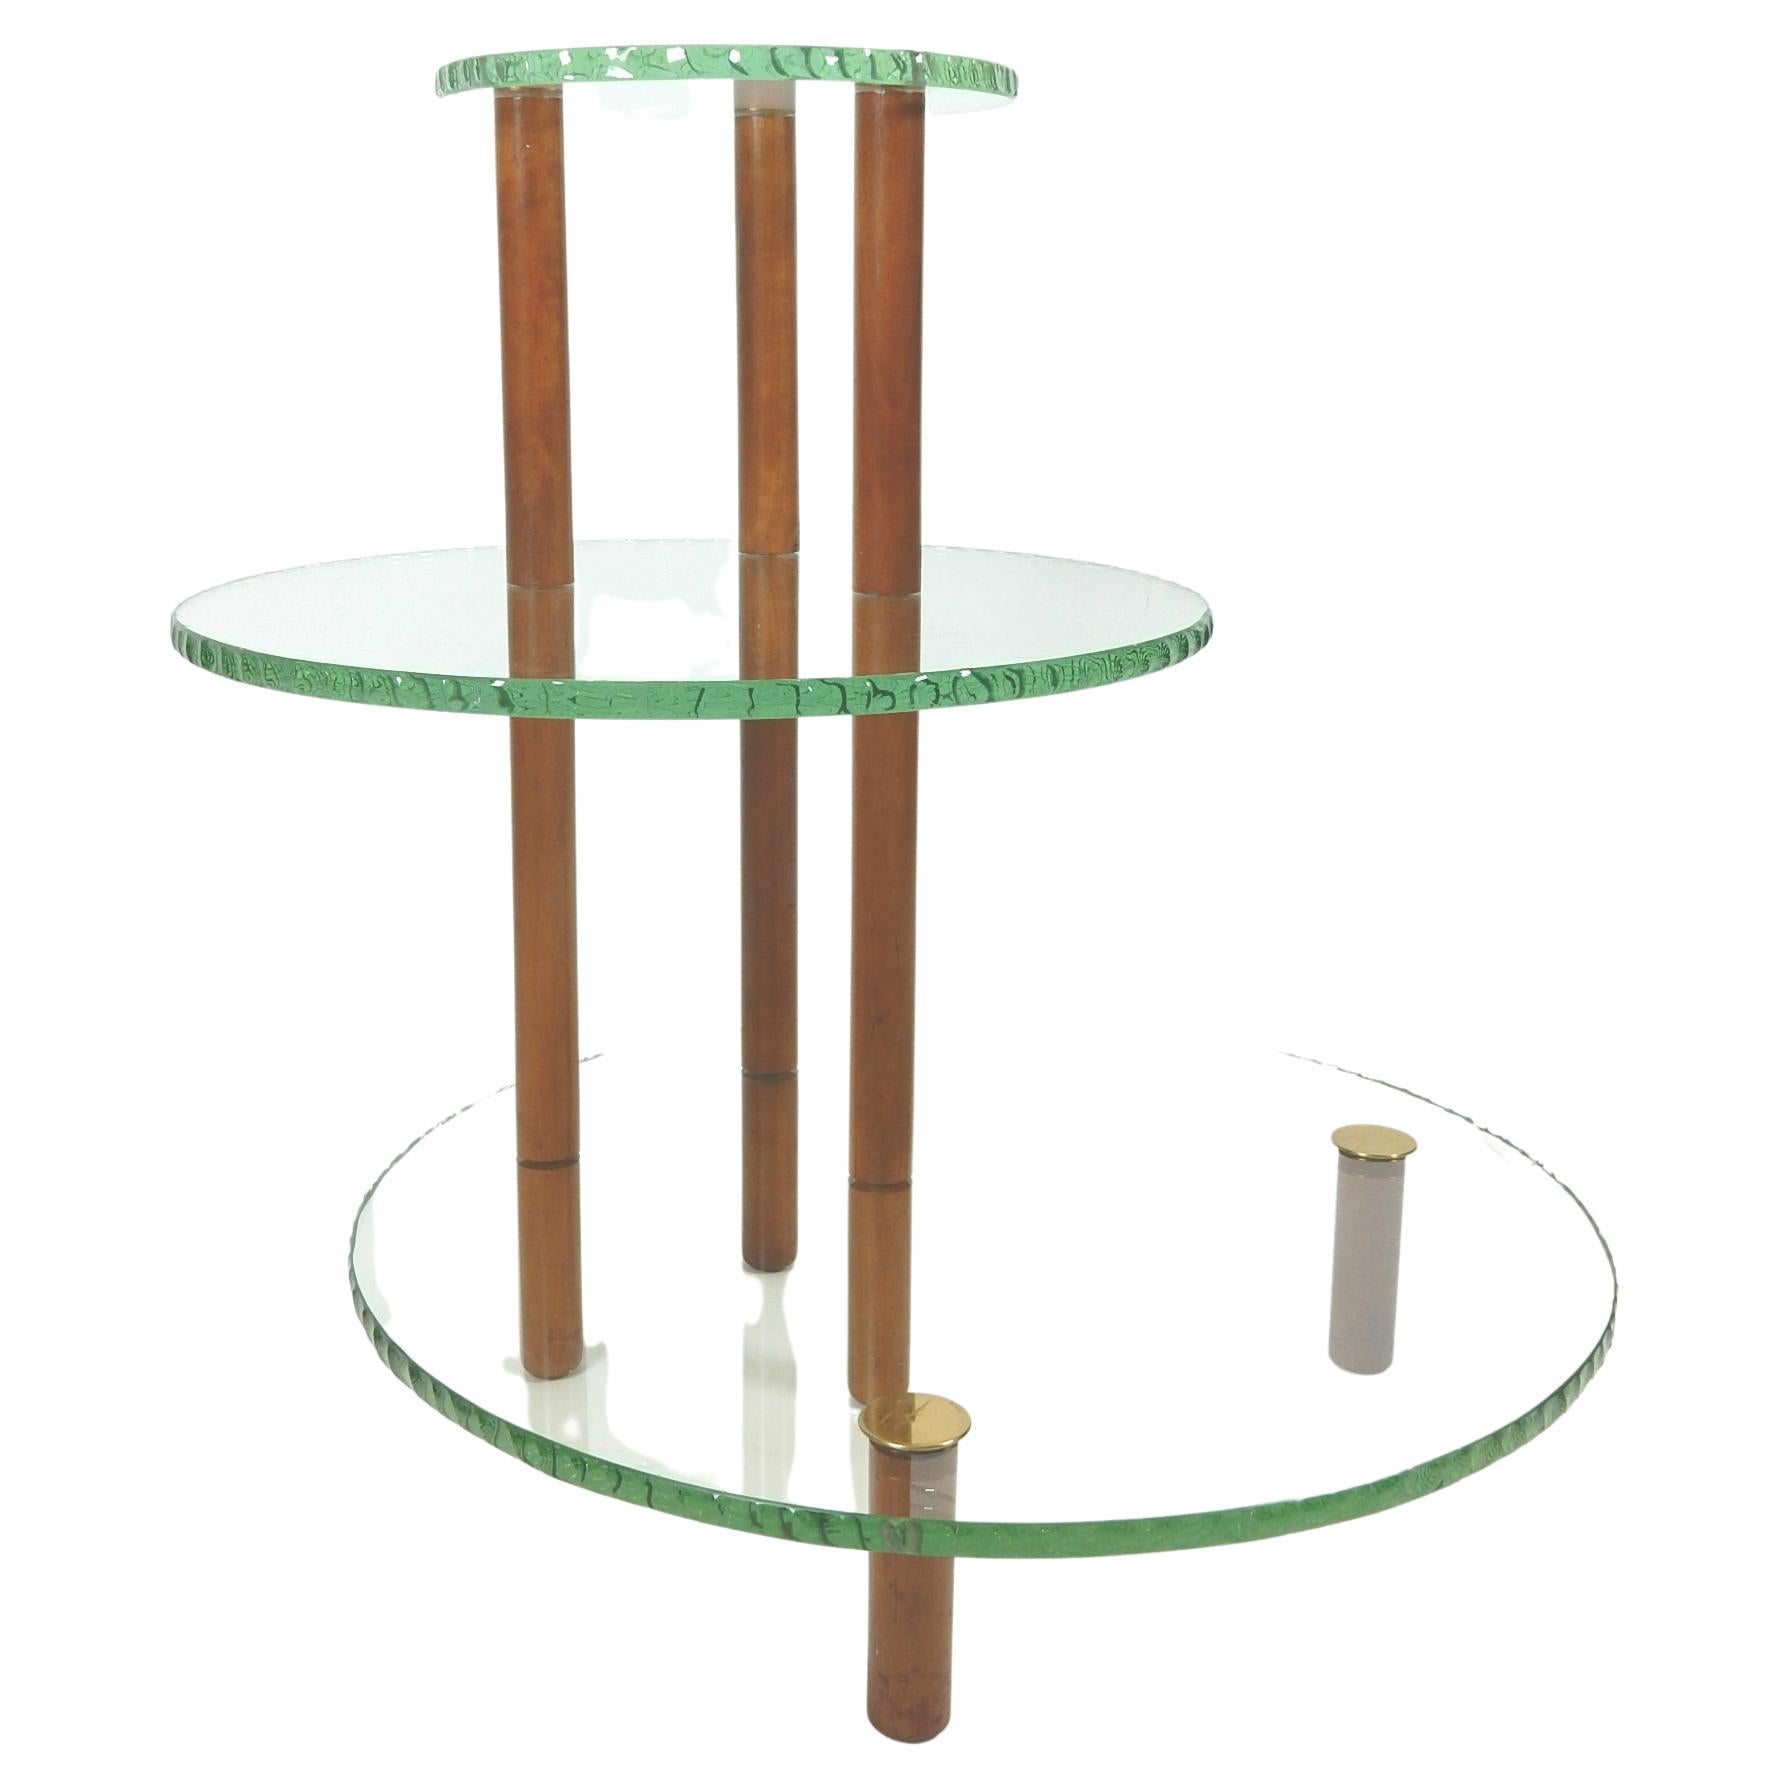 Magnifique table asymétrique à trois niveaux dans le style de Fontana Arte', vers les années 1960.
Tablettes en verre à bord vert ciselé. 
Des goujons en noyer soutiennent les pieds surmontés de fleurons en laiton poli.
Ce produit serait parfait